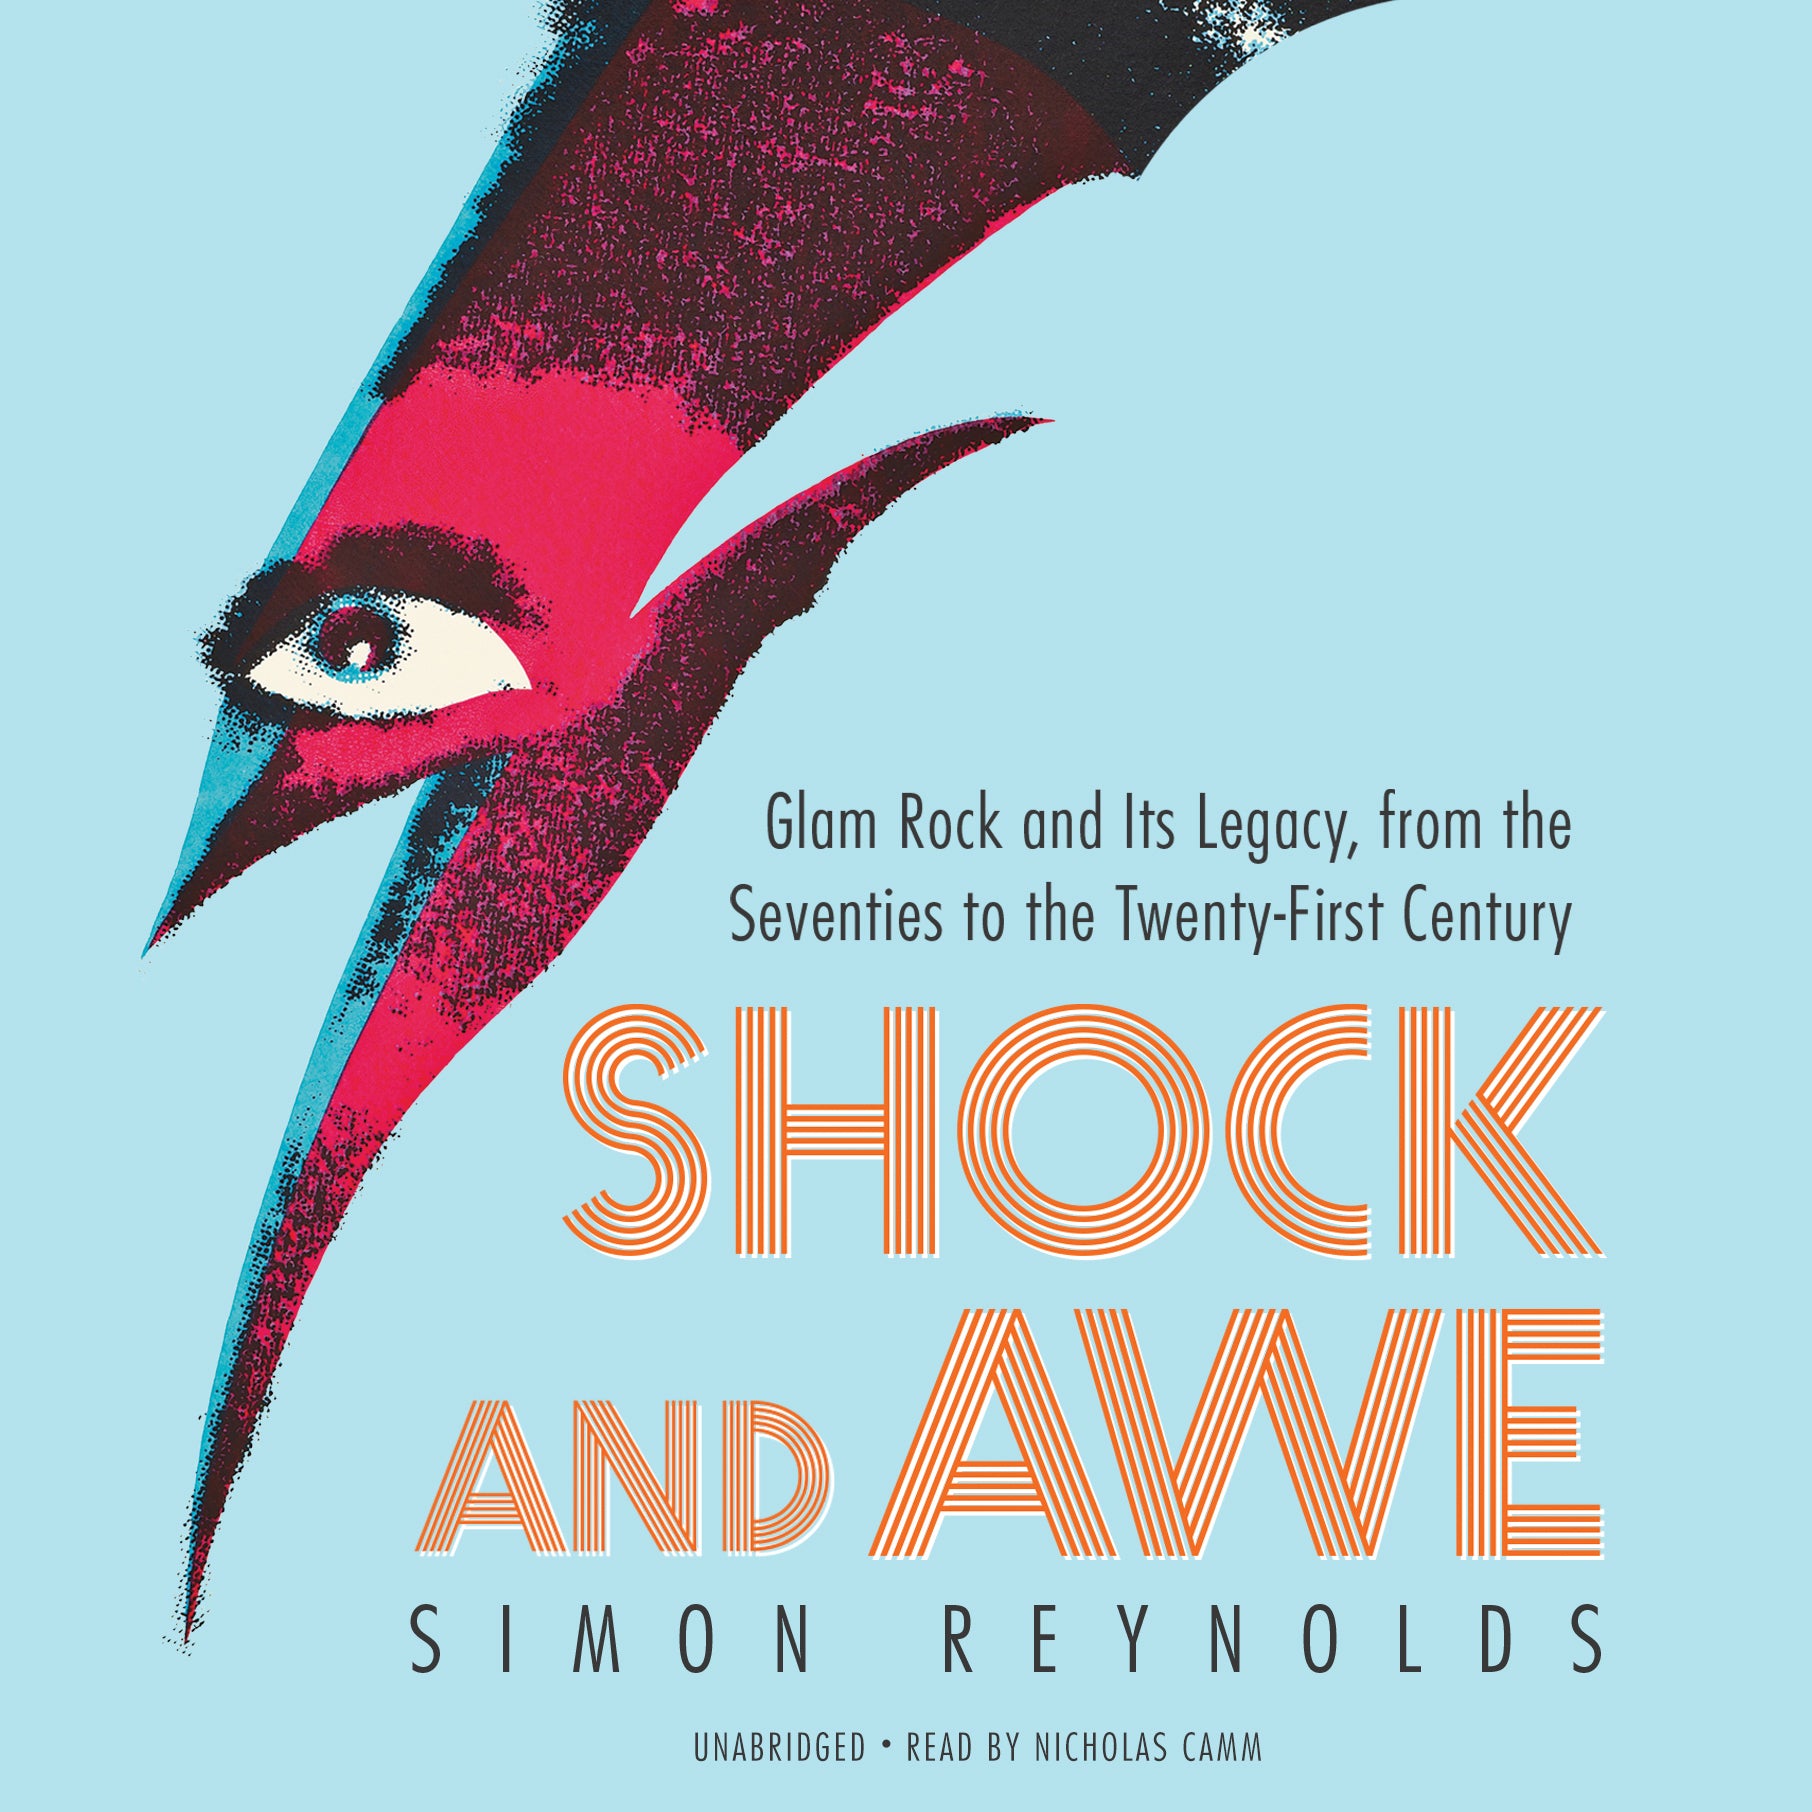 Simon Reynolds "Shock and Awe" Book (2016)